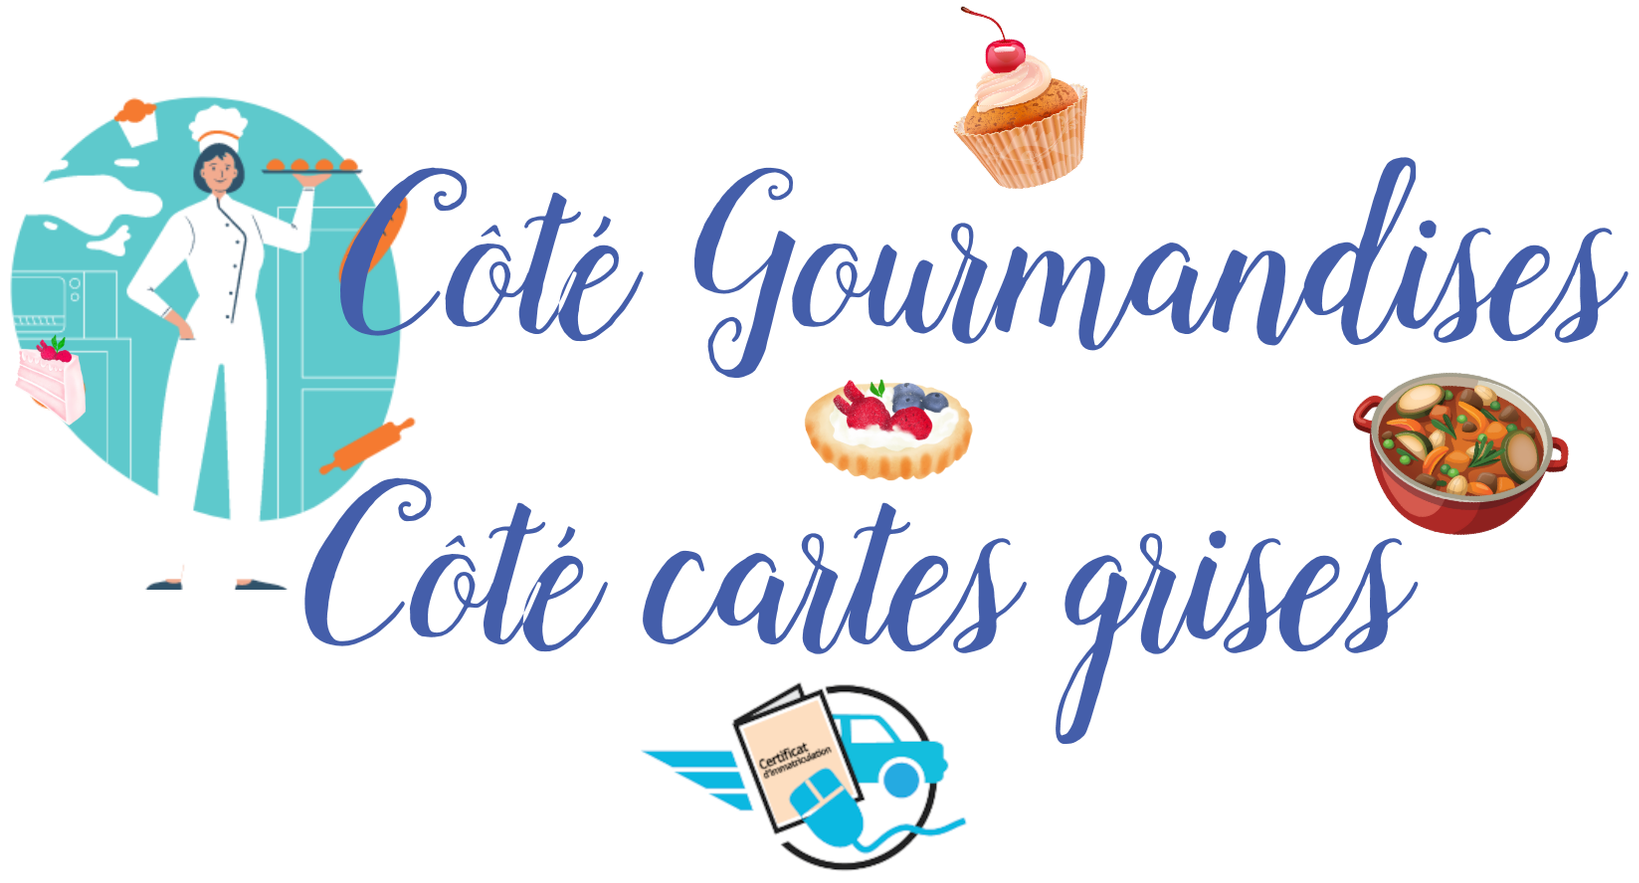 Côté Gourmandises Côté Cartes Grises